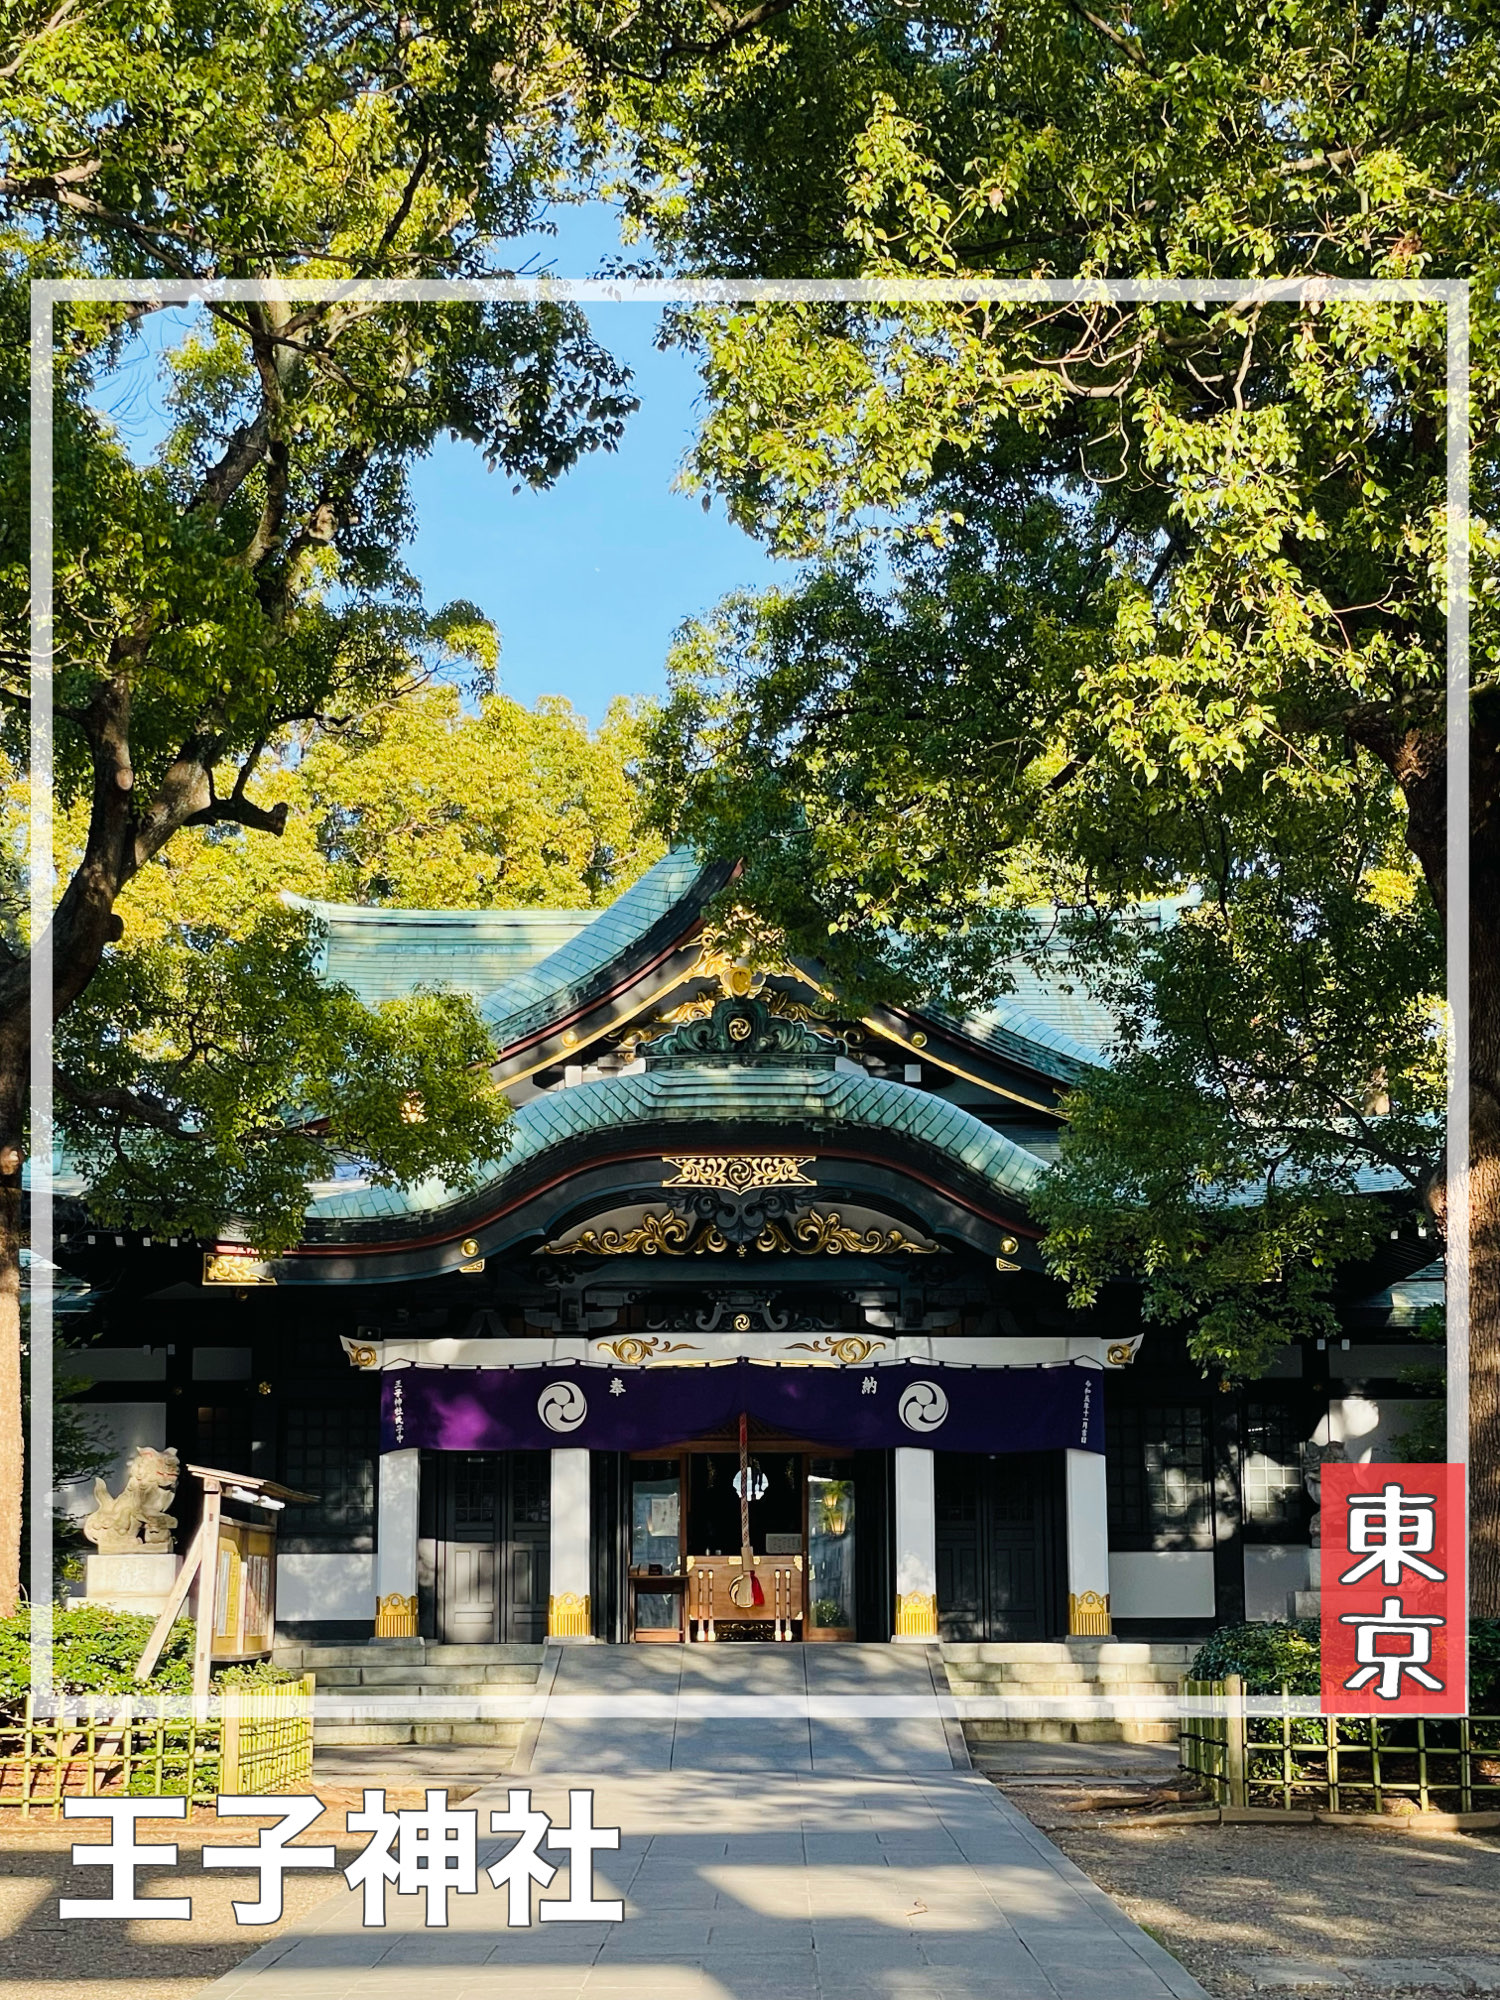 【东京都/王子神社】北区的庄严与庄严的神社